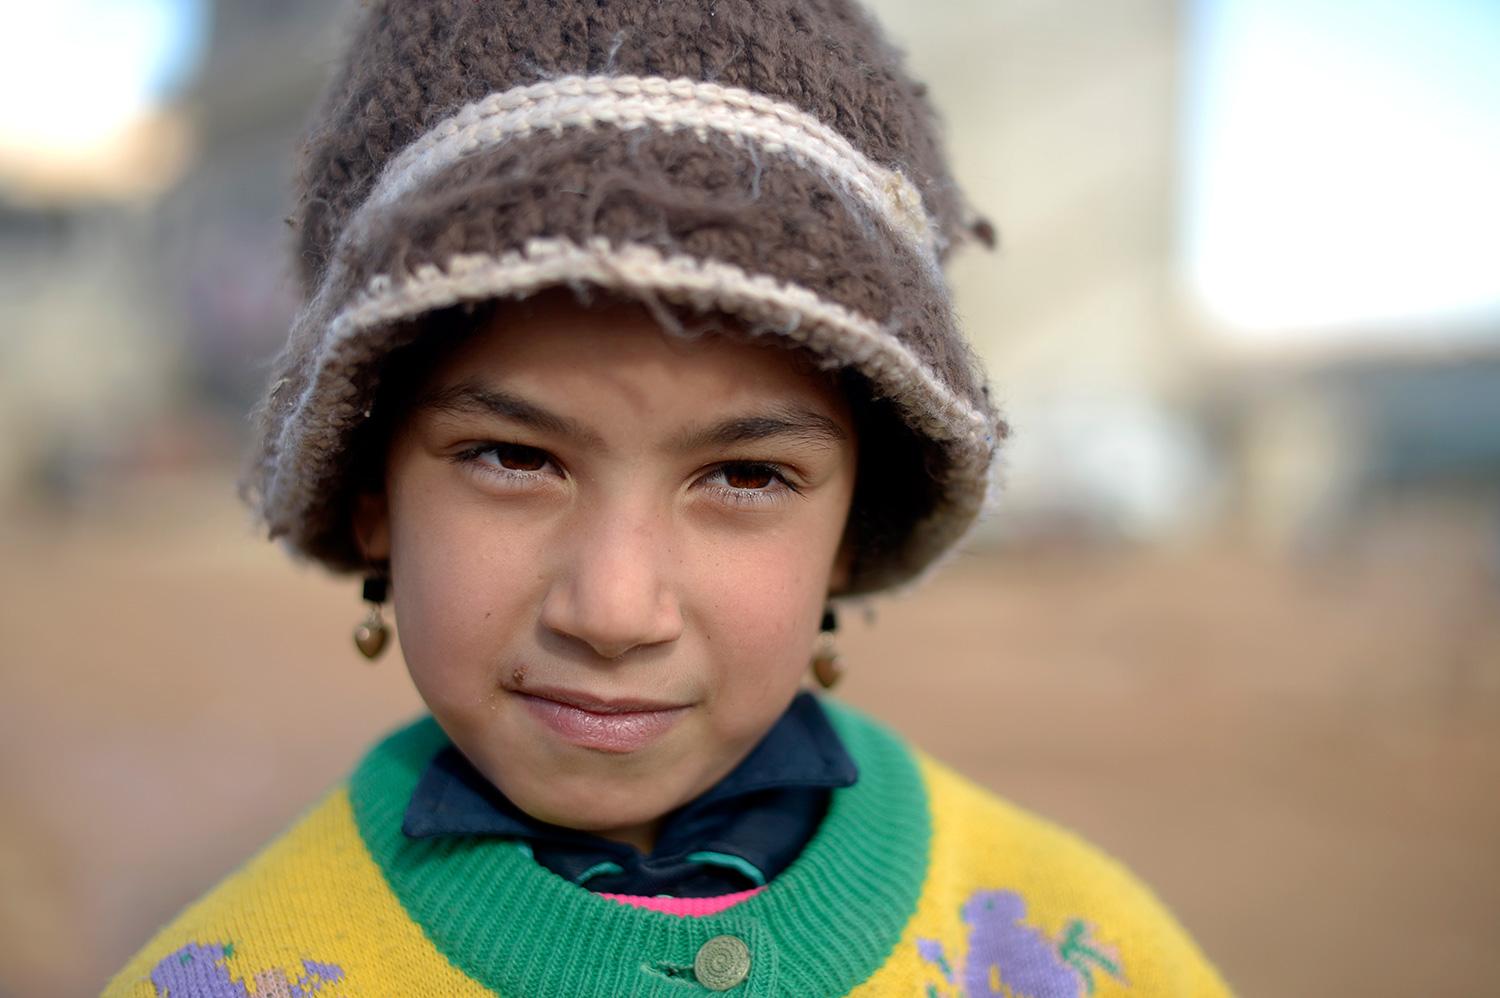 Vad drömmer du om? Fatme, 6: Att åka tillbaka till Syrien och gå i skolan.